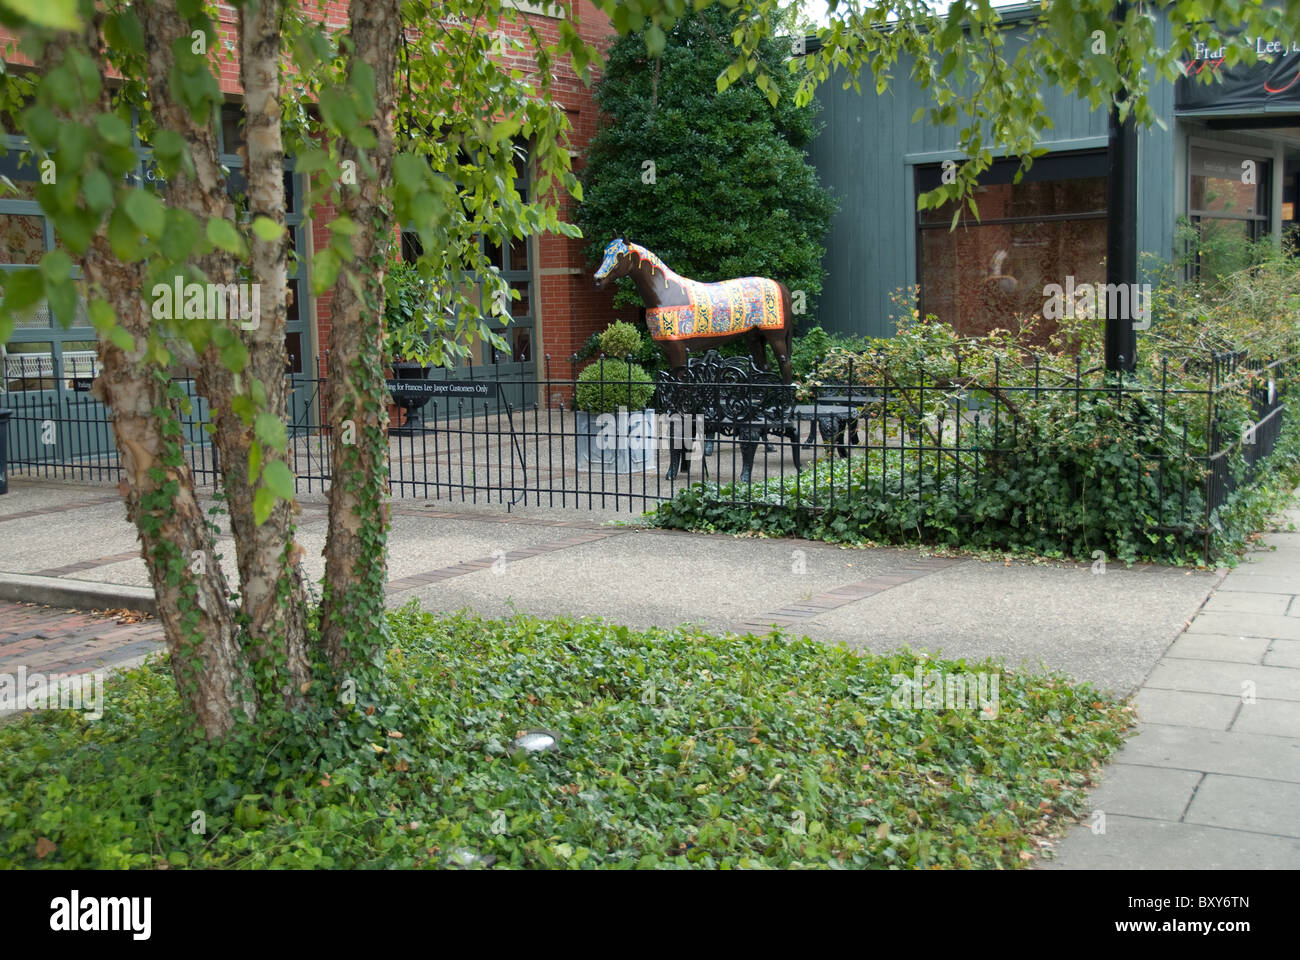 Frances Lee Jasper ; tapis orientaux ; Statue de cheval ; Louisville Kentucky USA Banque D'Images